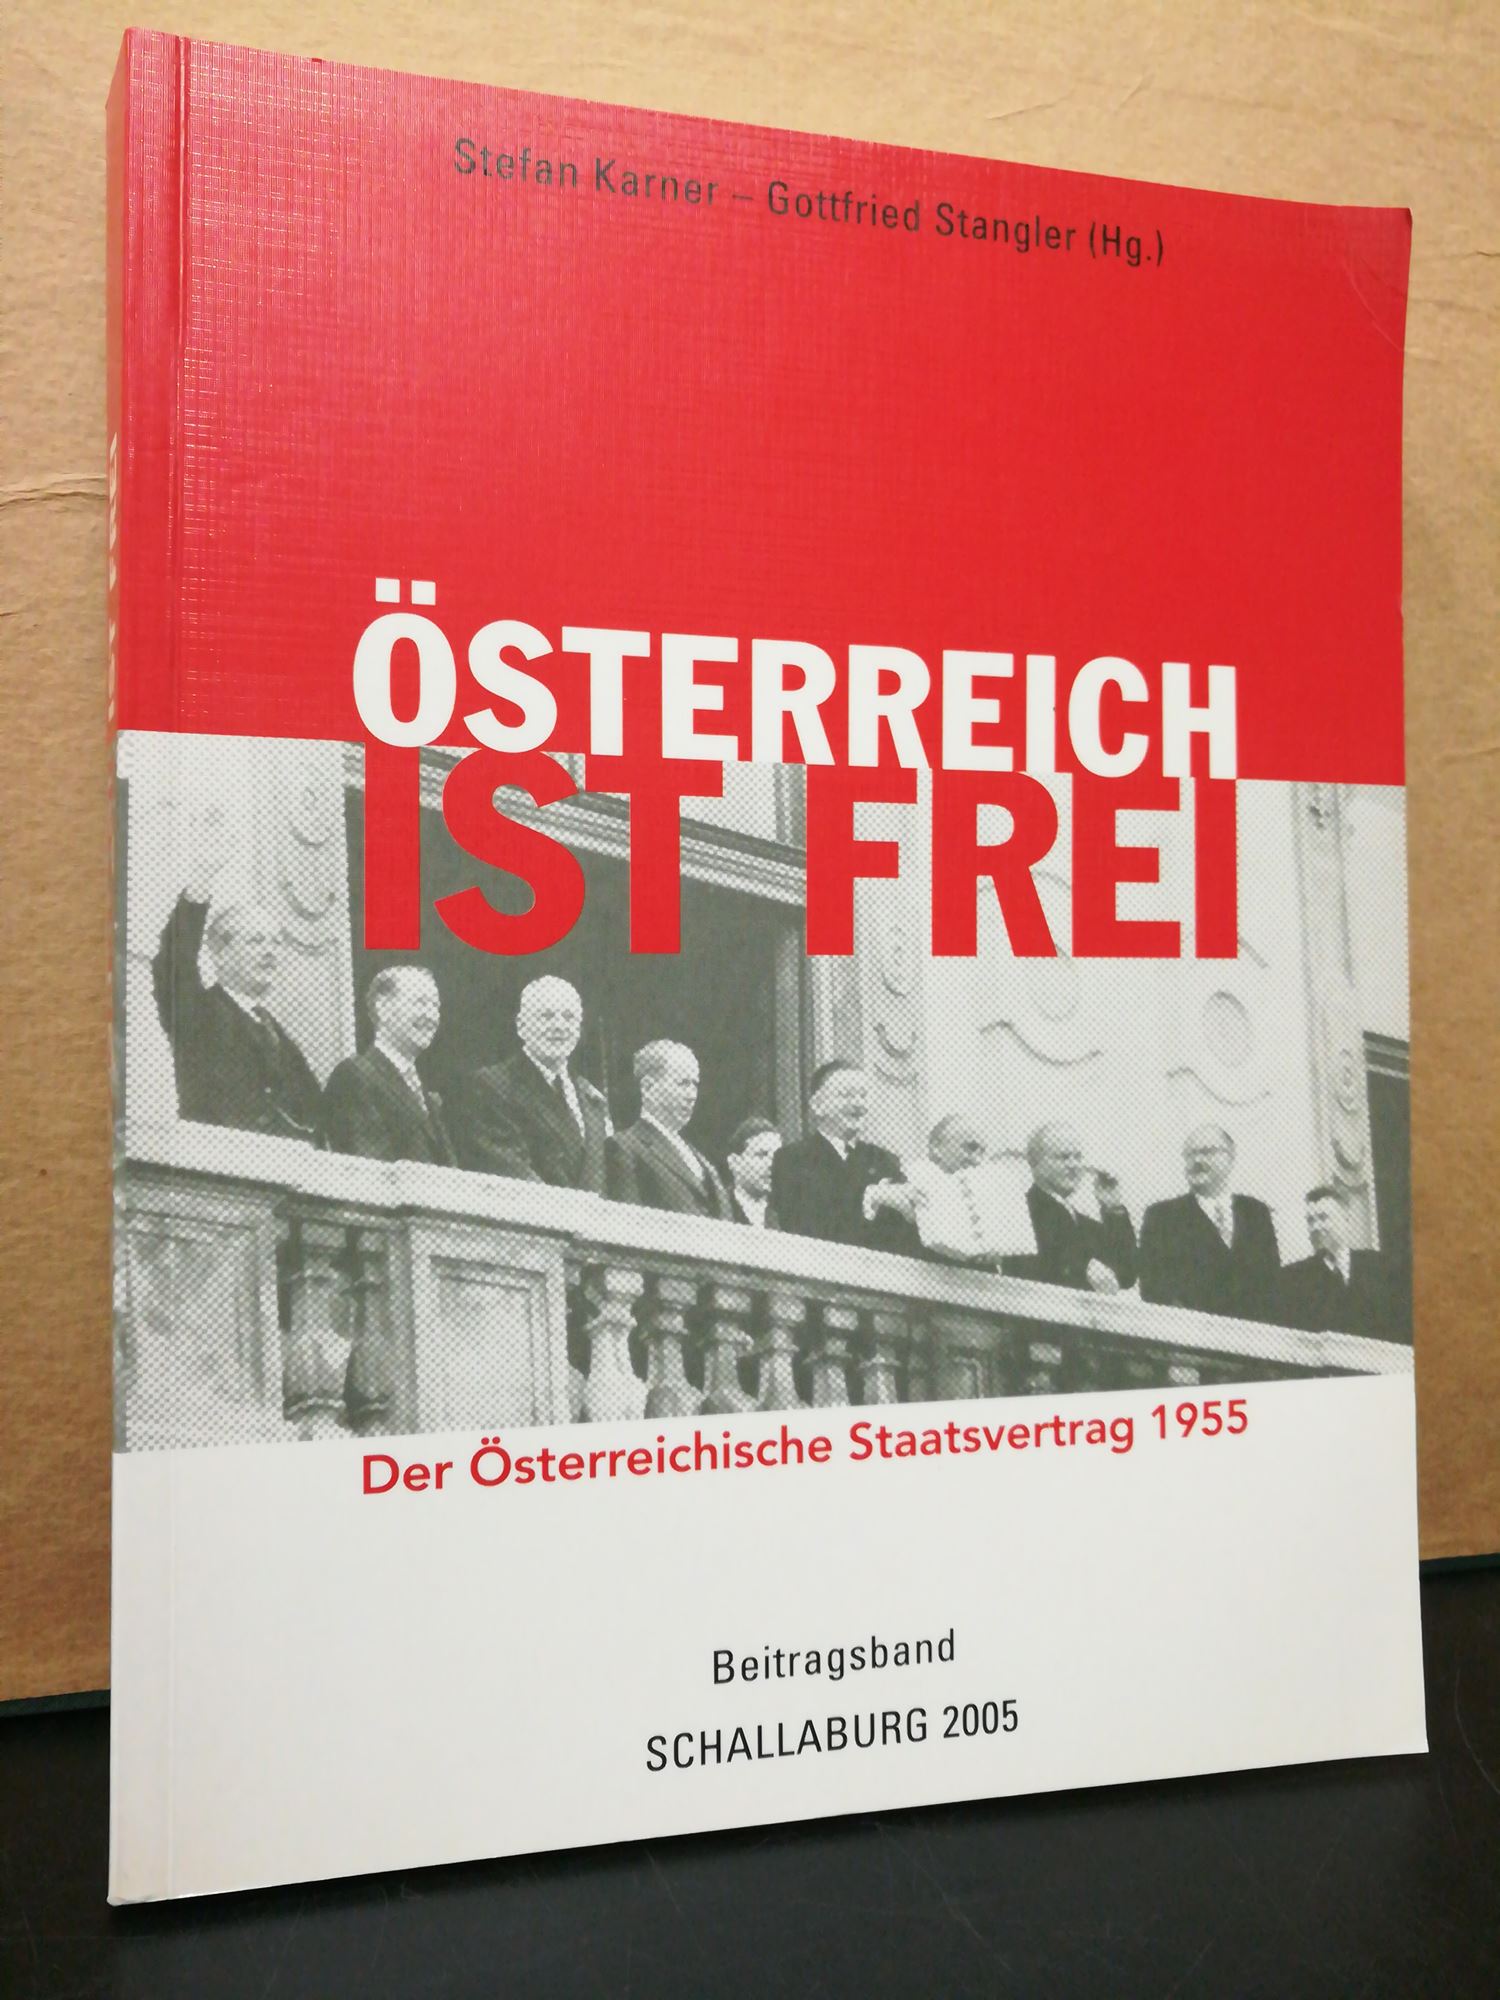 Österreich ist frei! - Der Österreichische Staatsvertrag 1955 / Beitragsband zur Ausstellung auf Schloss Schallaburg - Karner, Stefan & Gottfried Stangler (Hg.)